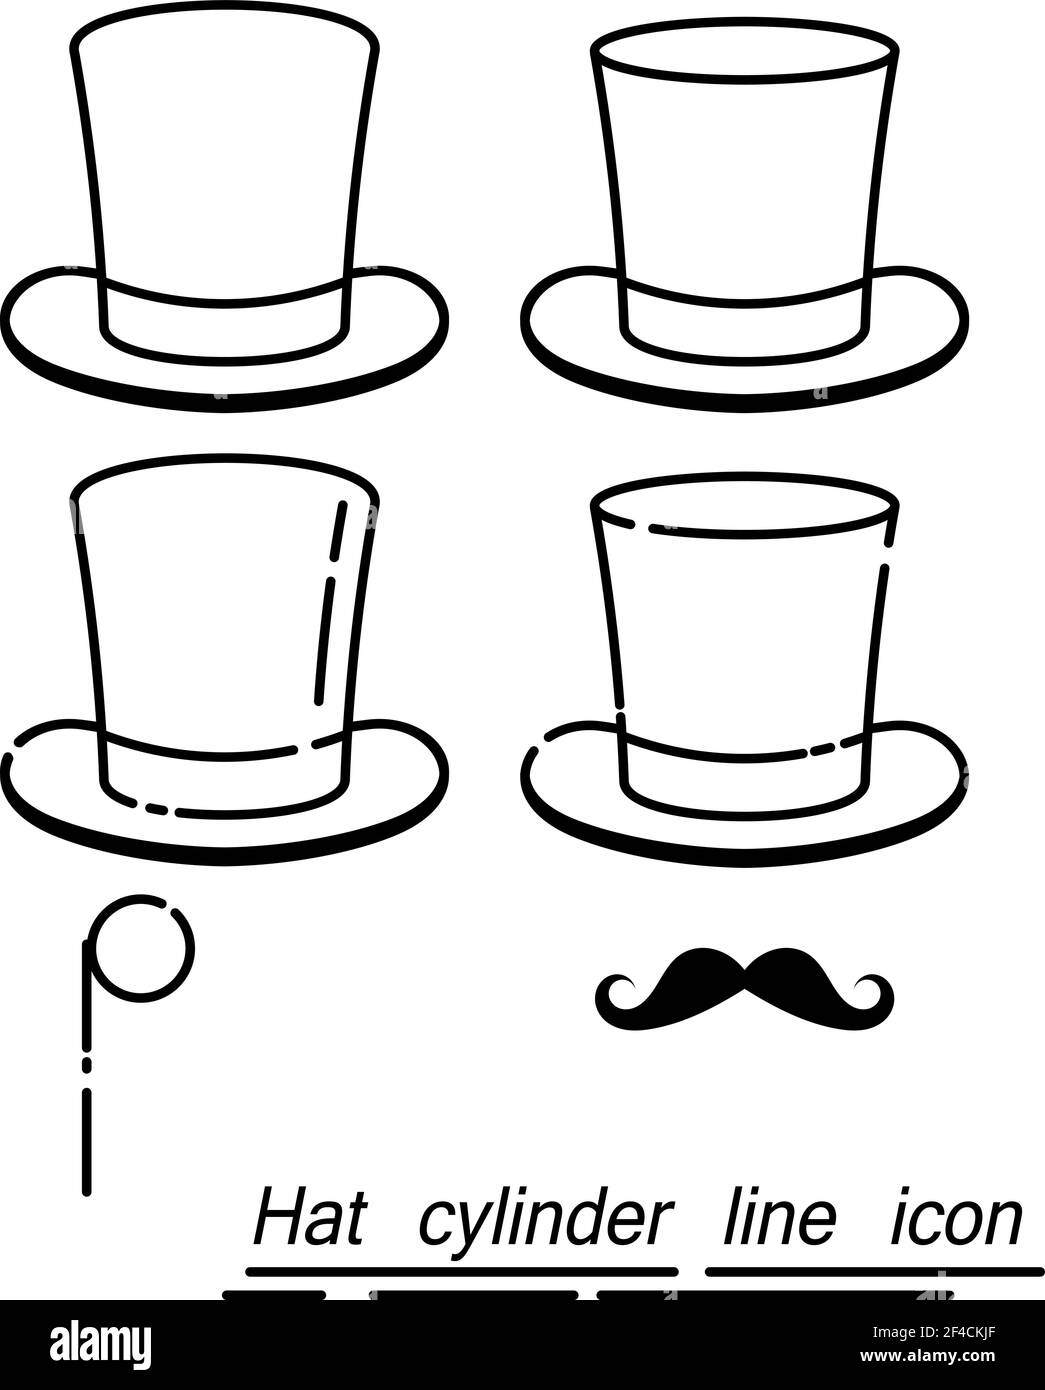 Ensemble de gentleman - chapeaux, moustaches, monocle dans un style linéaire. Icône de ligne. Isolé sur fond blanc. Illustration vectorielle. Illustration de Vecteur